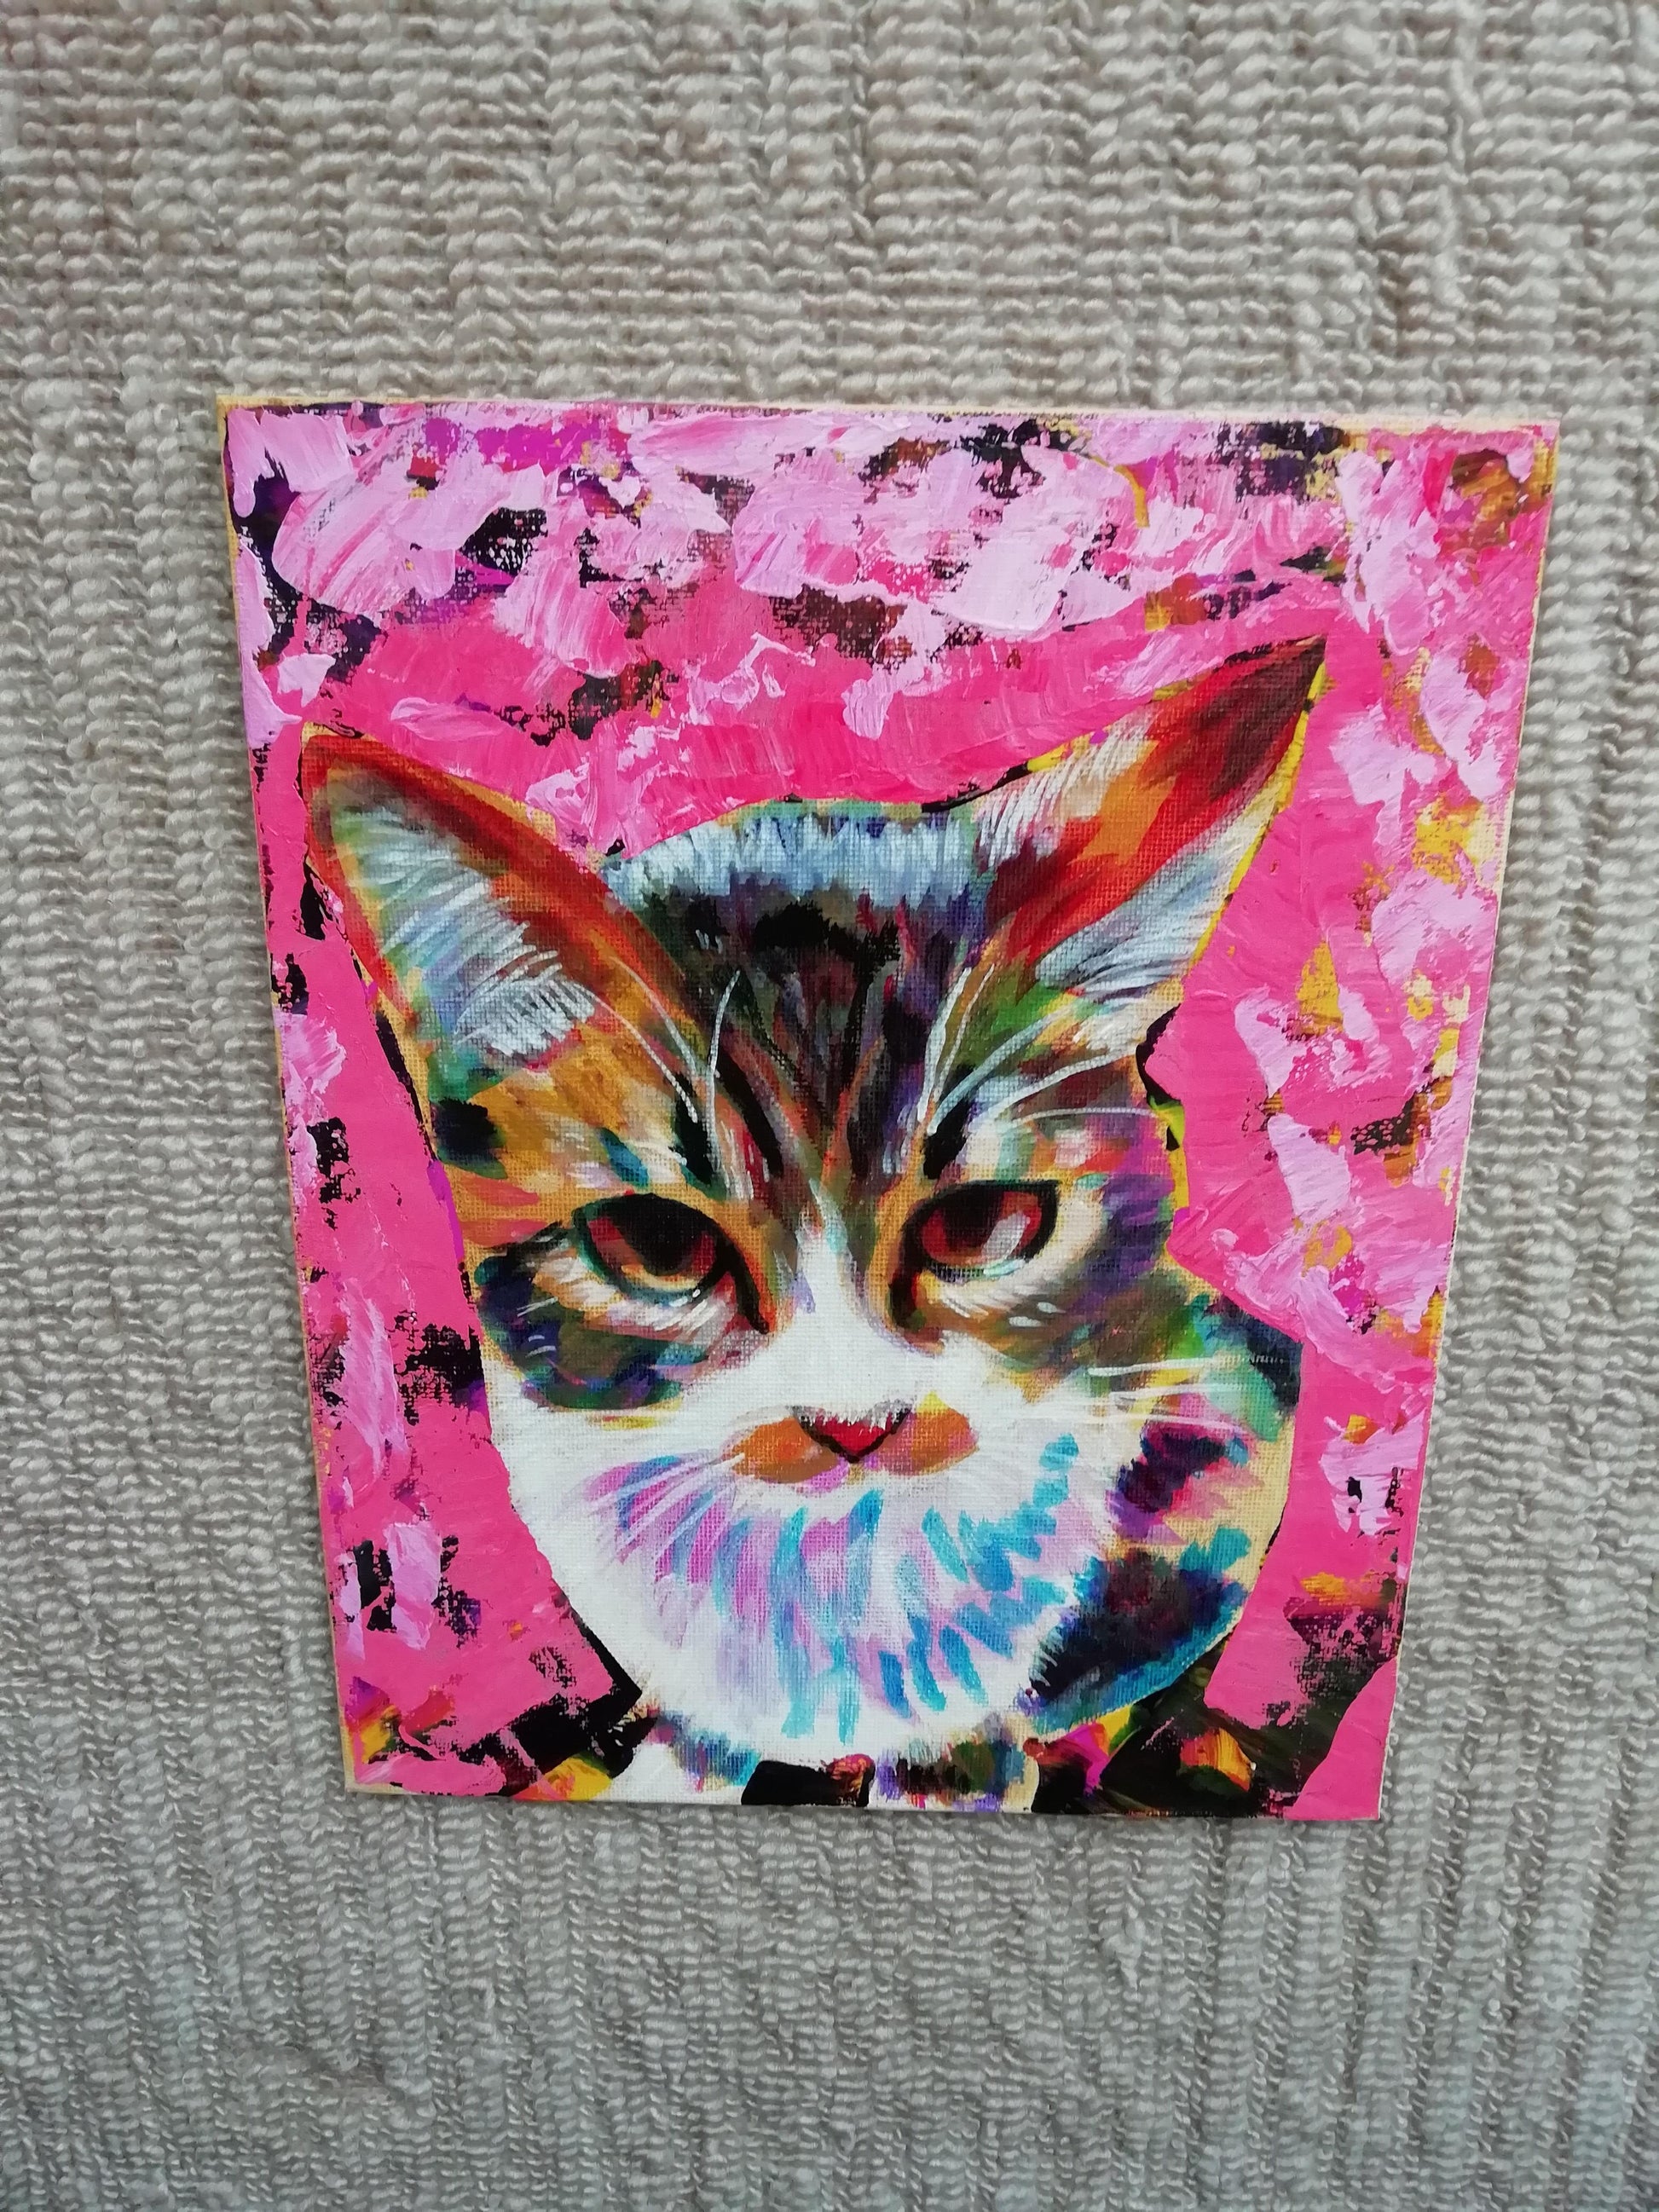 上目遣いの猫 - FROM ARTIST